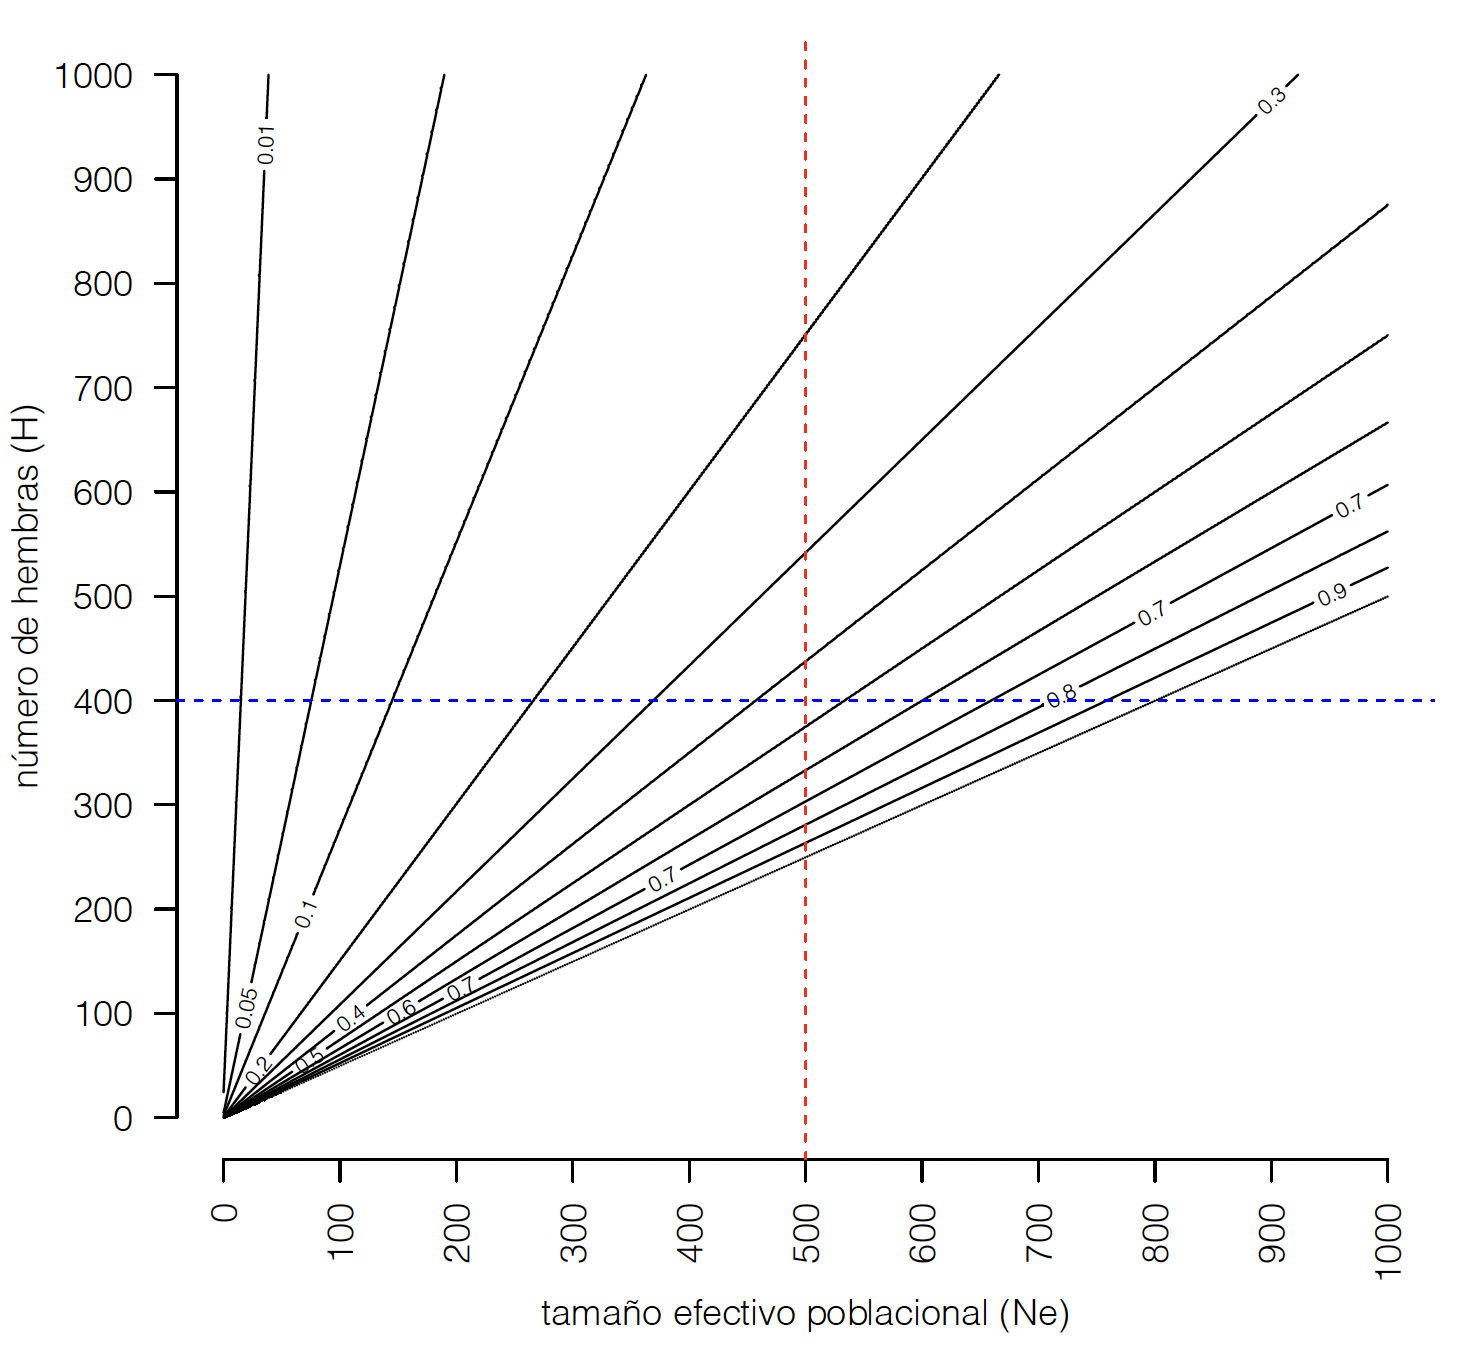 Proporción mínima de machos (respecto al número de hembras) necesaria para mantener un tamaño efectivo poblacional mínimo. Dado un \(N_e\) y un número de hembras (línea vertical y horizontal, respectivamente), las proporciones permitidas son las curvas que quedan en el cuadrante inferior derecho.